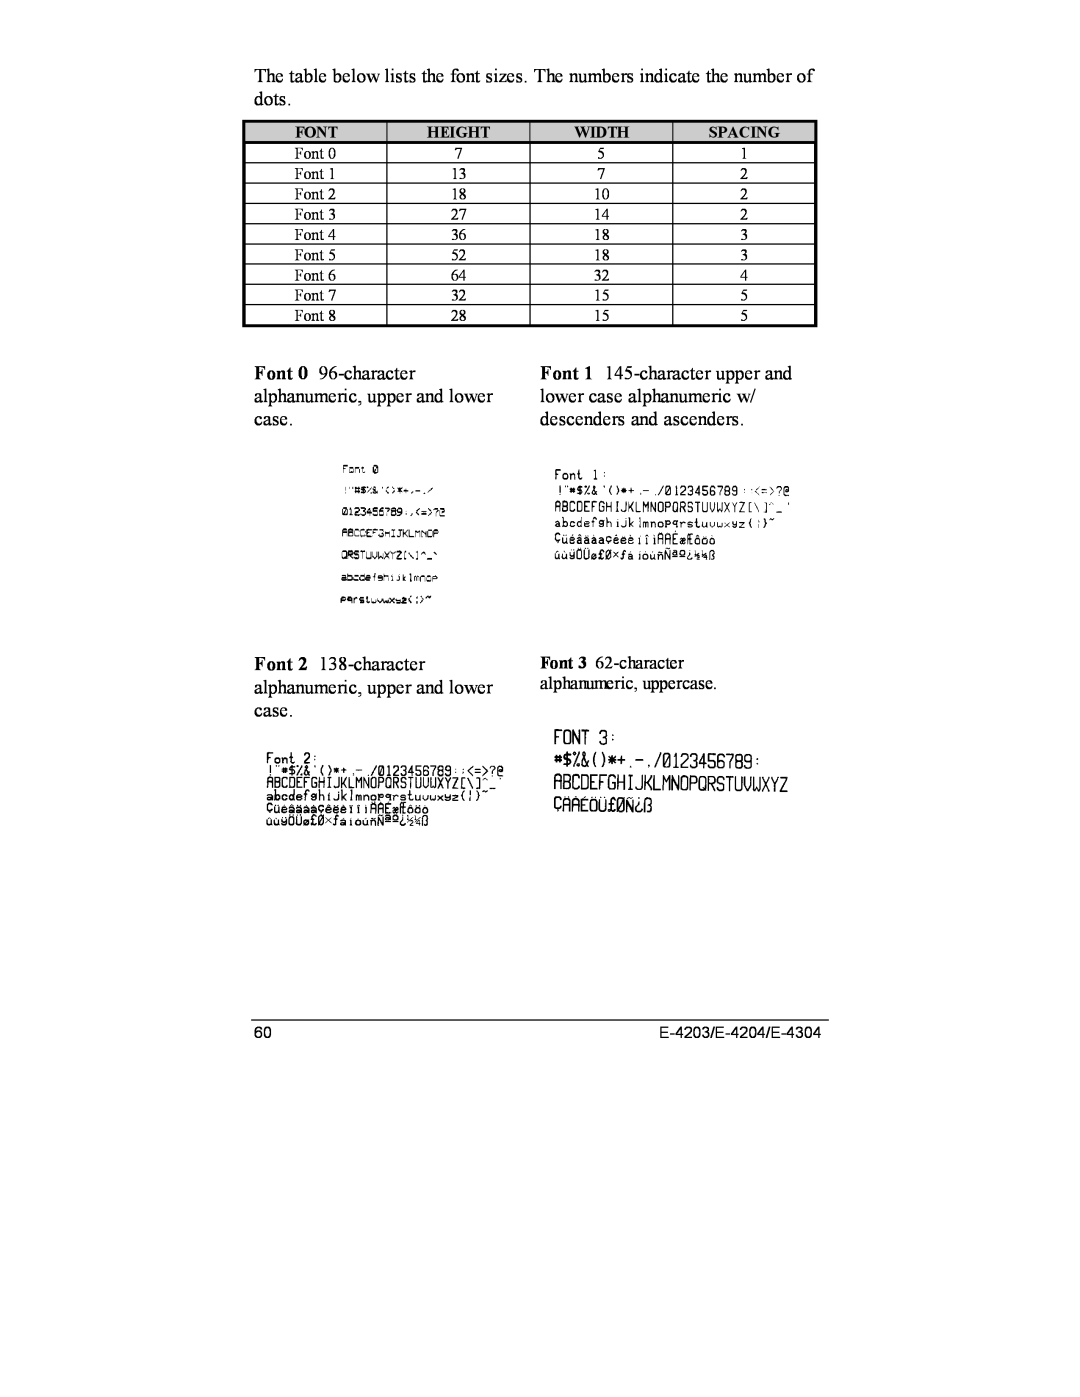 Datamax E-4204 Font 0 96-character alphanumeric, upper and lower case, Font 2 138-character, Font 3 62-character, Height 